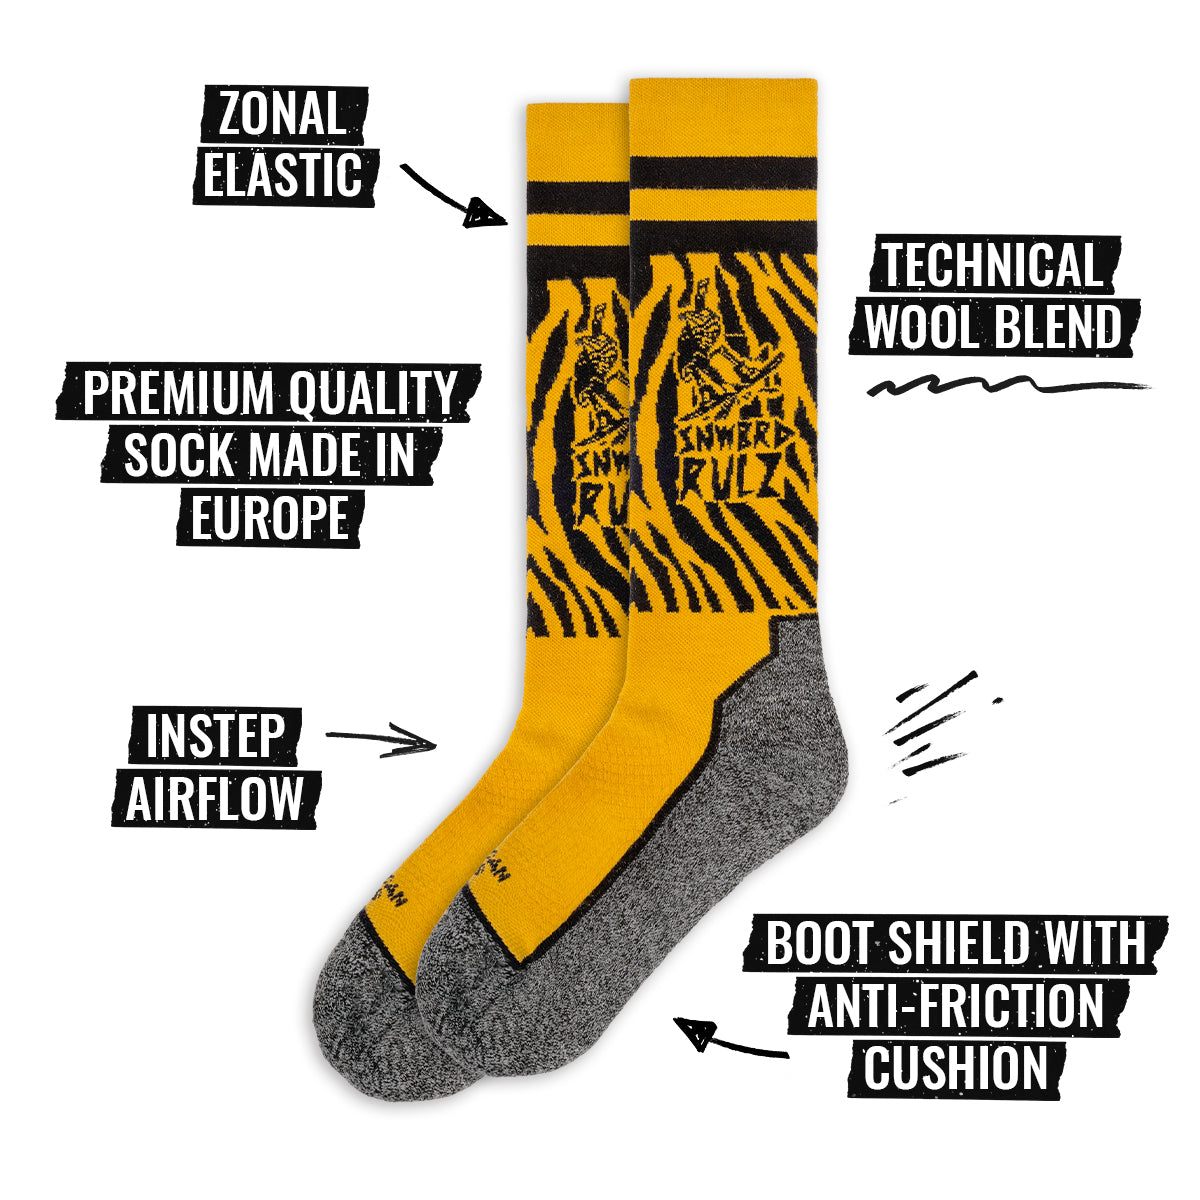 Bild der Spezifikationen der American Socks Kniehohe Schneestrümpfe